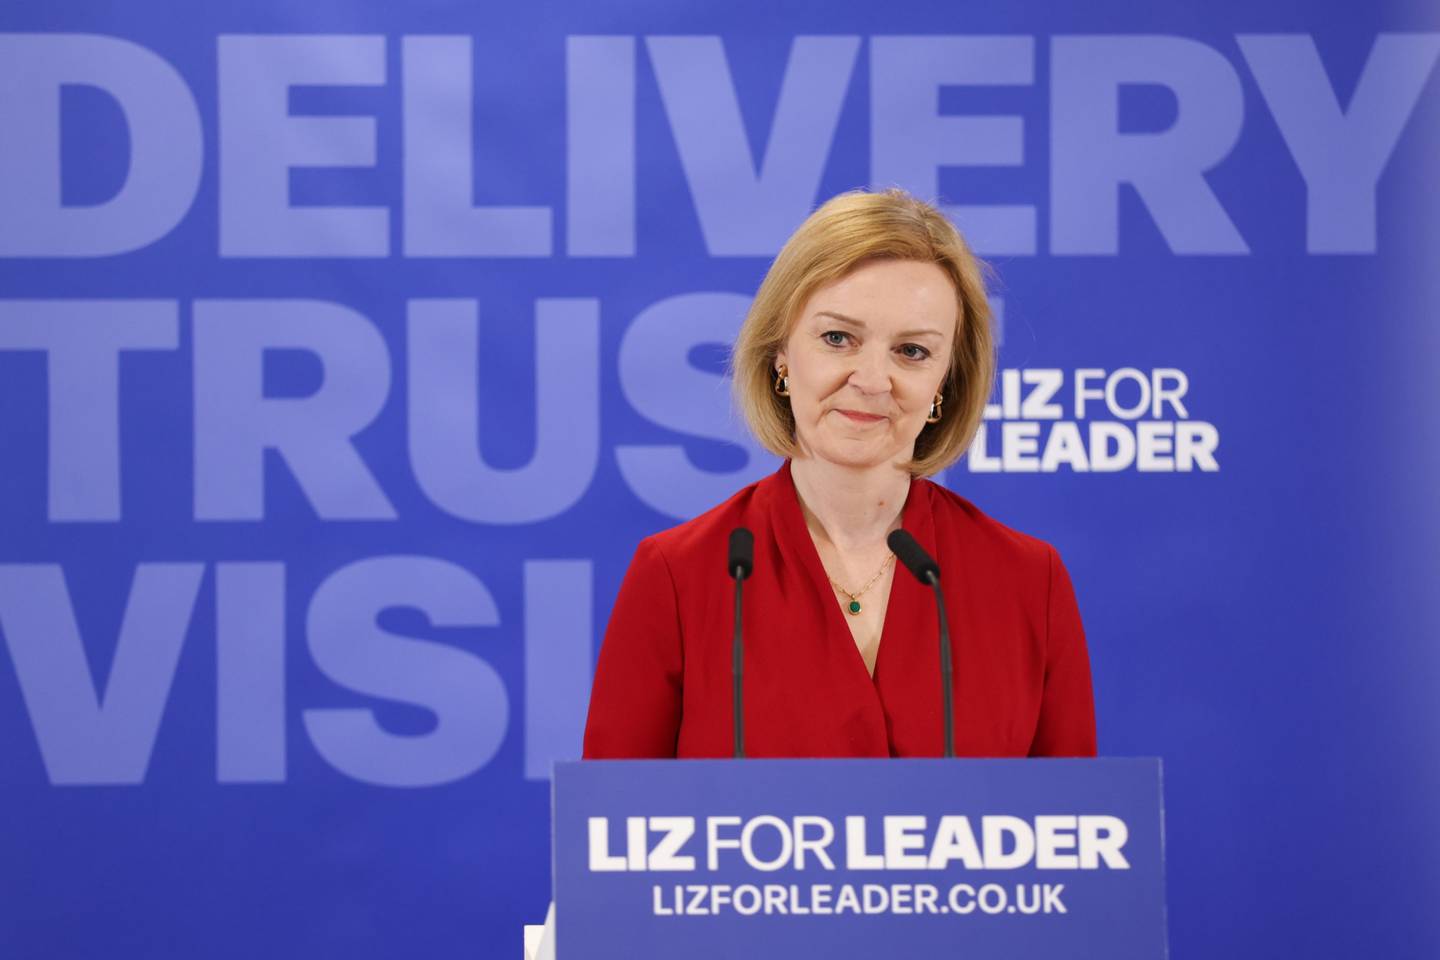 Liz Truss, ministra de Asuntos Exteriores del Reino Unido, durante el lanzamiento formal de su campaña de liderazgo del Partido Conservador en Londres, Reino Unido, el jueves 14 de julio de 2022. El Partido Conservador del Reino Unido celebrará este jueves la última votación para elegir a su nuevo líder y al próximo primer ministro británico.dfd